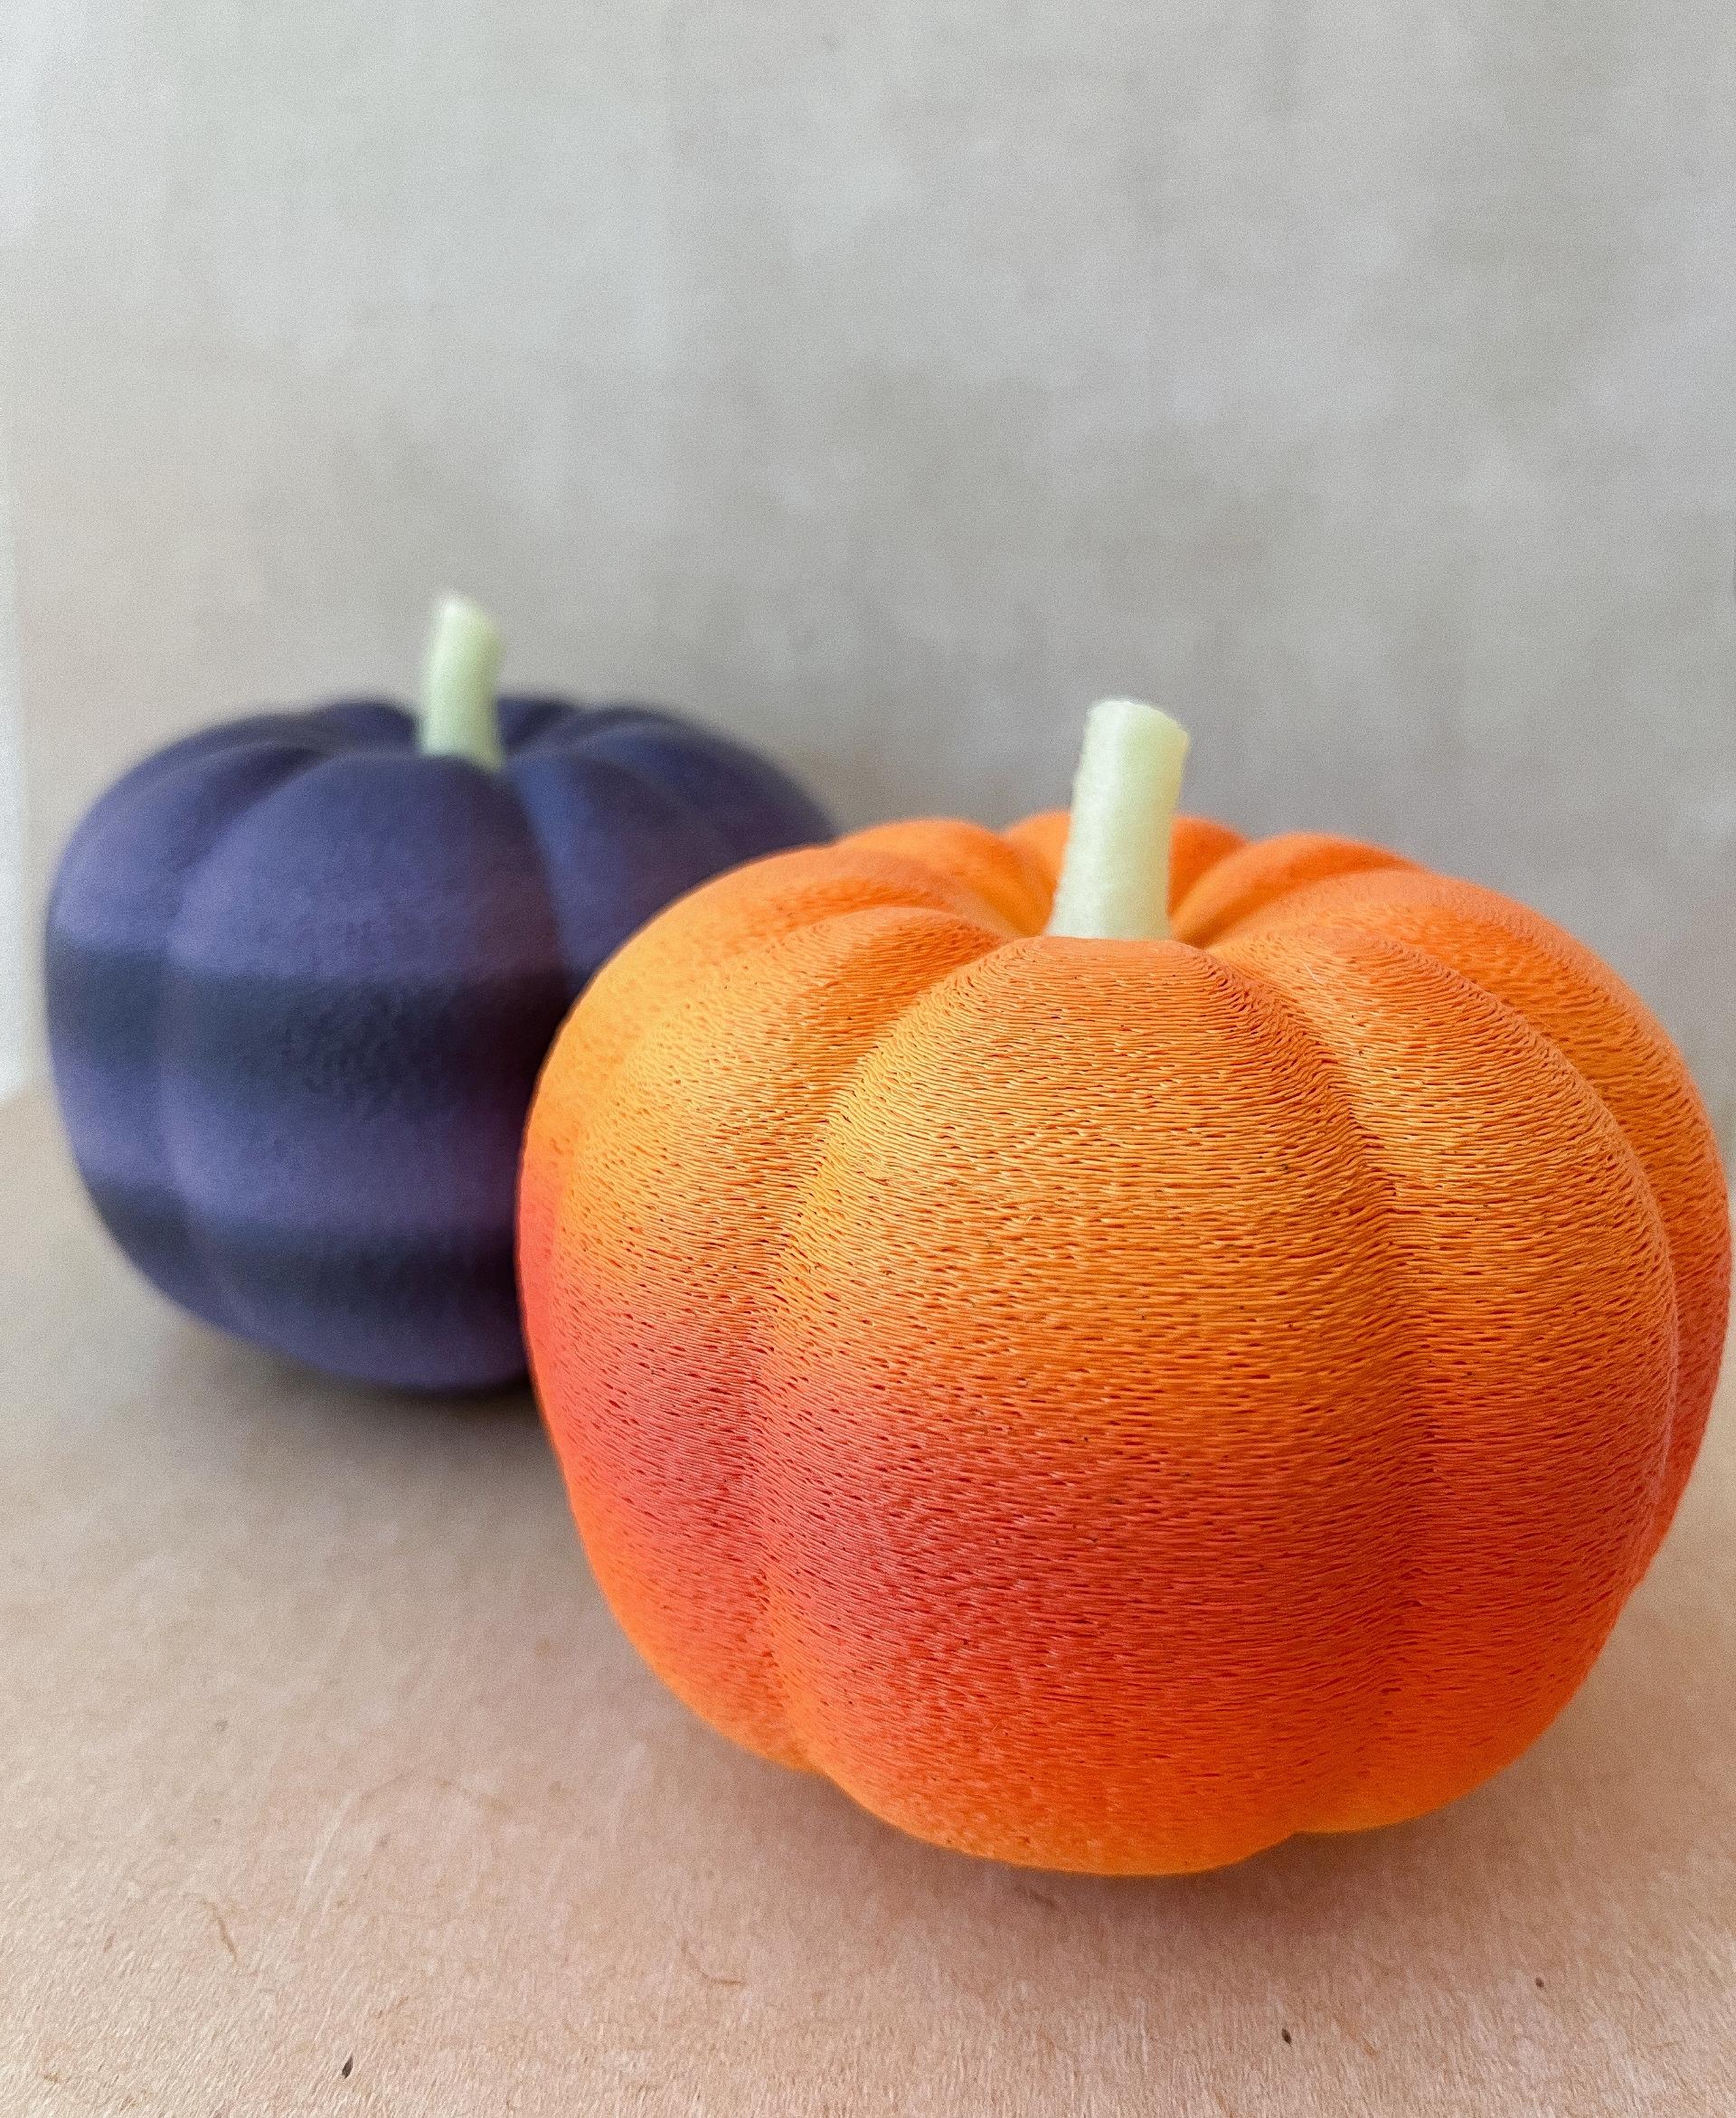 Pumpkin - FUZZY skin pumpkins in 200%!!
Polymaker halloween filament - 3d model